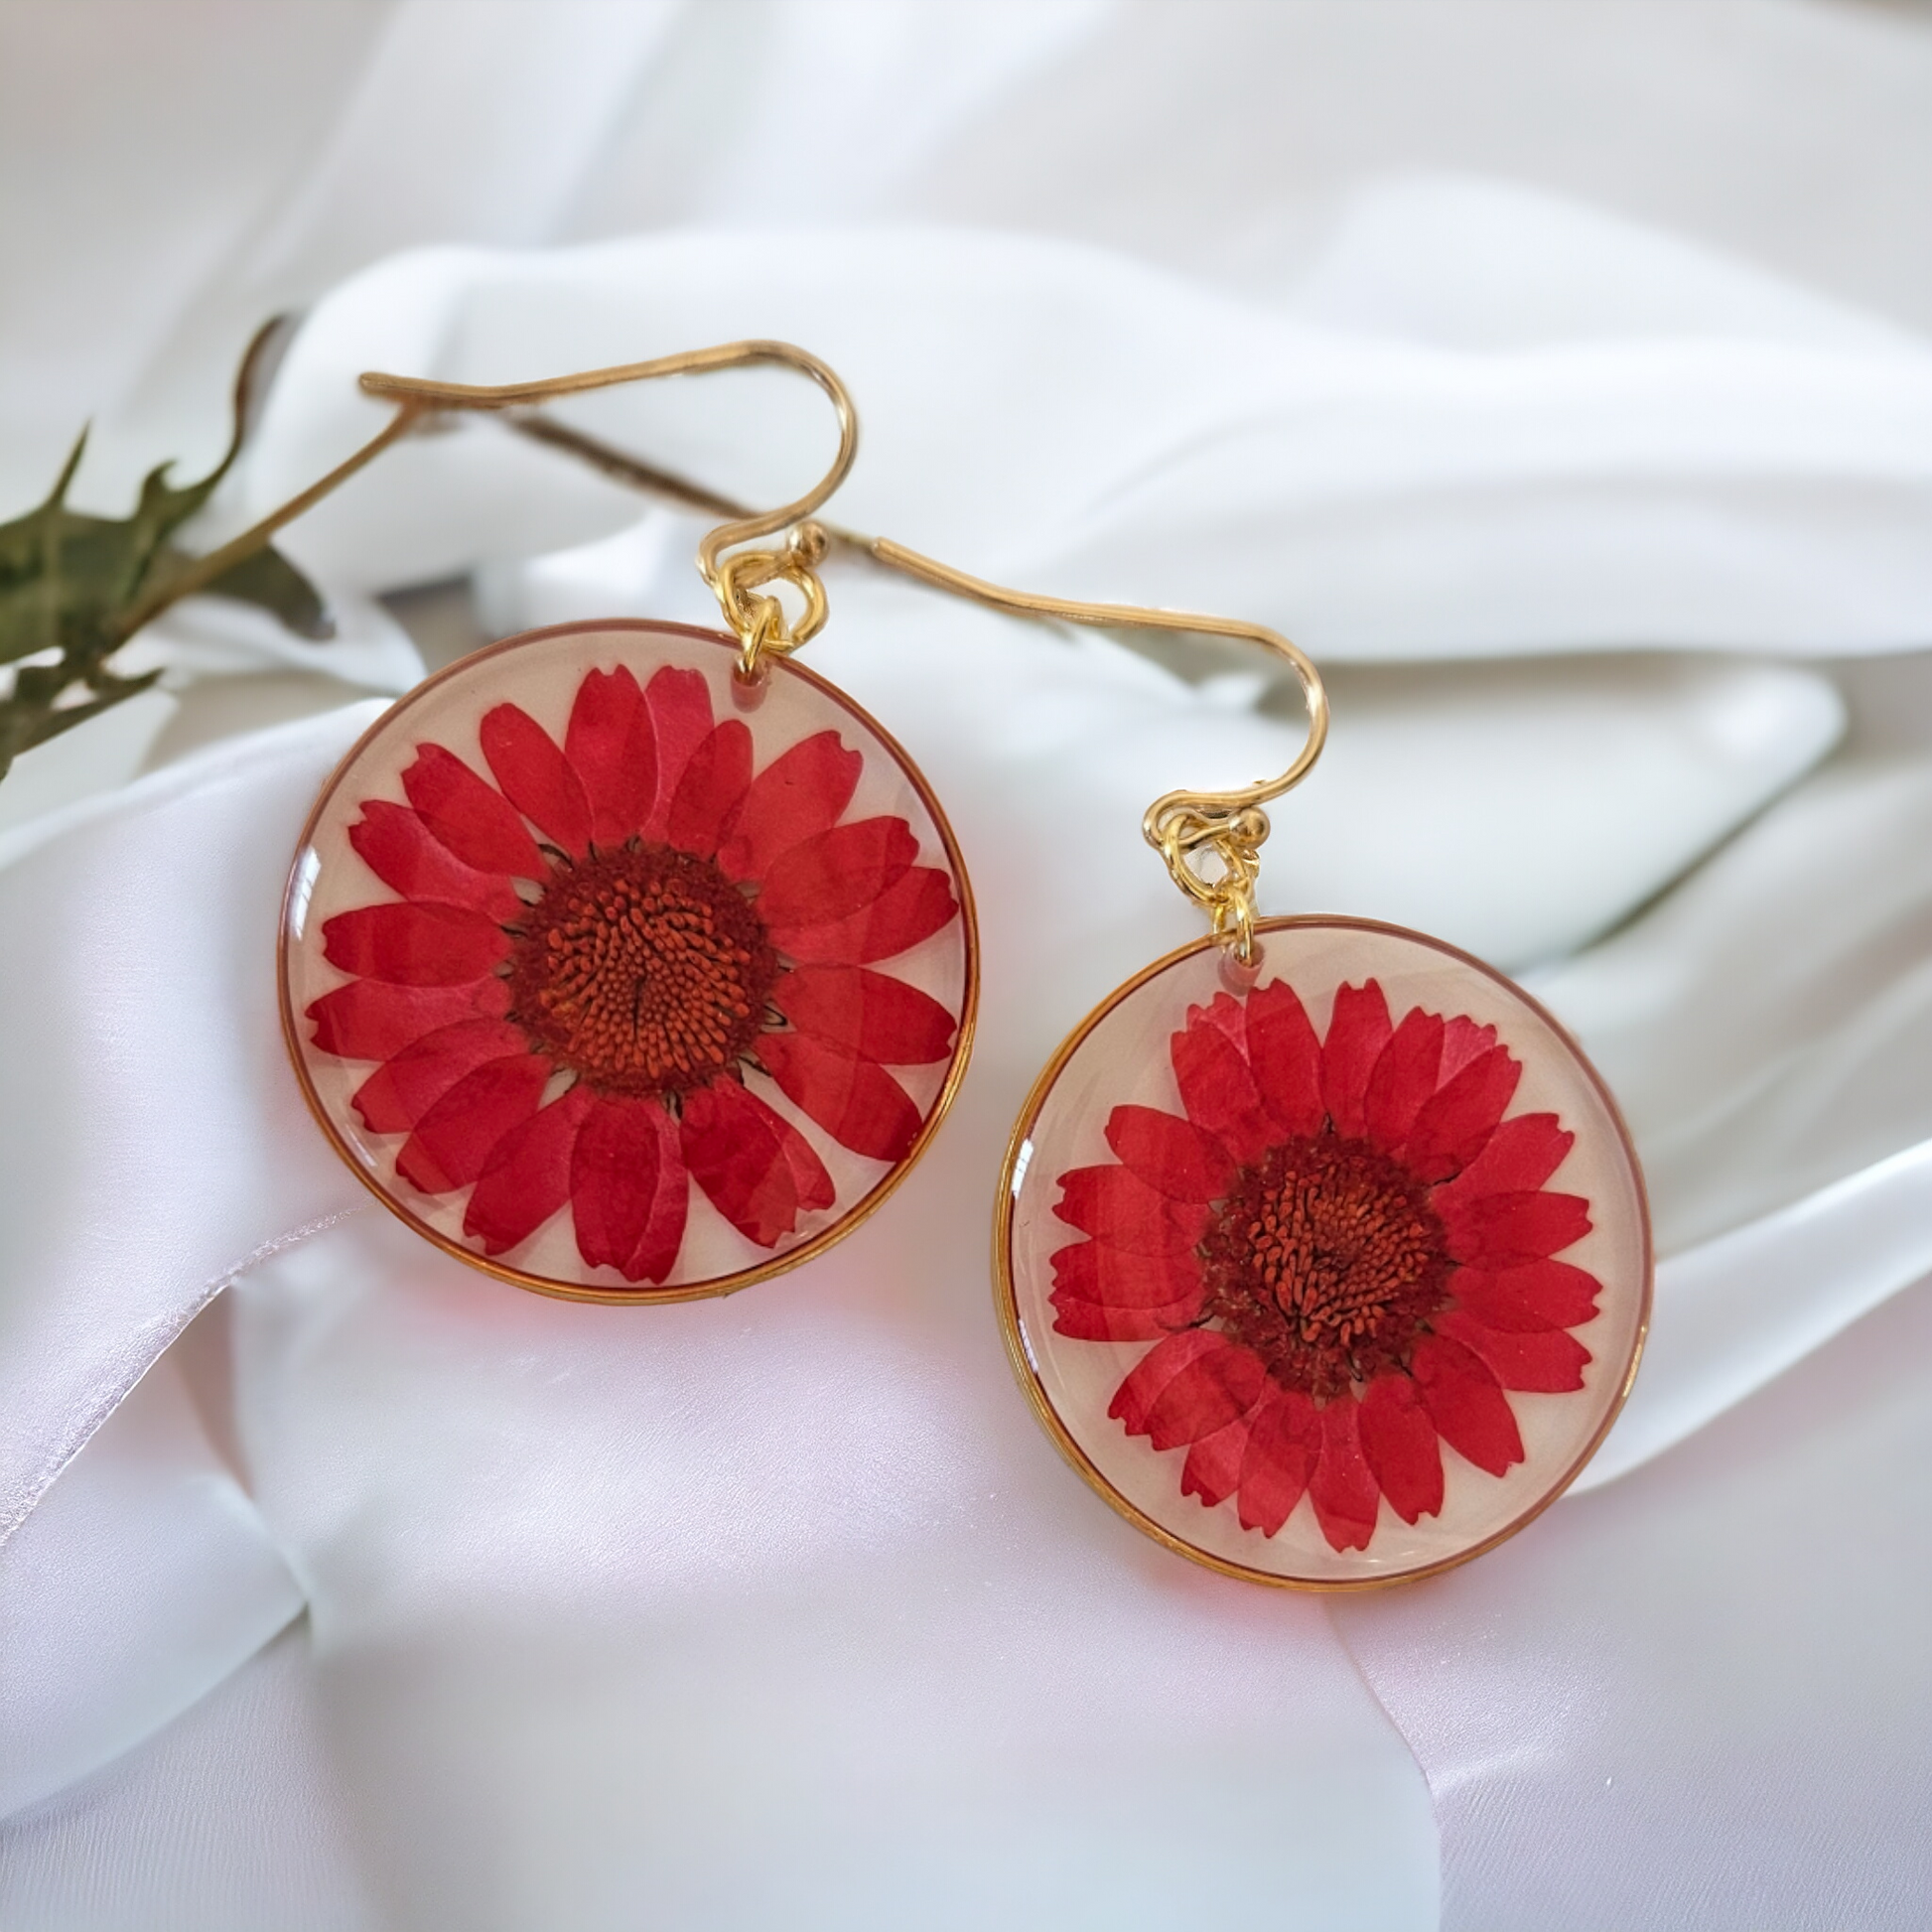 Red Daisy Earrings | Real Flower Earrings